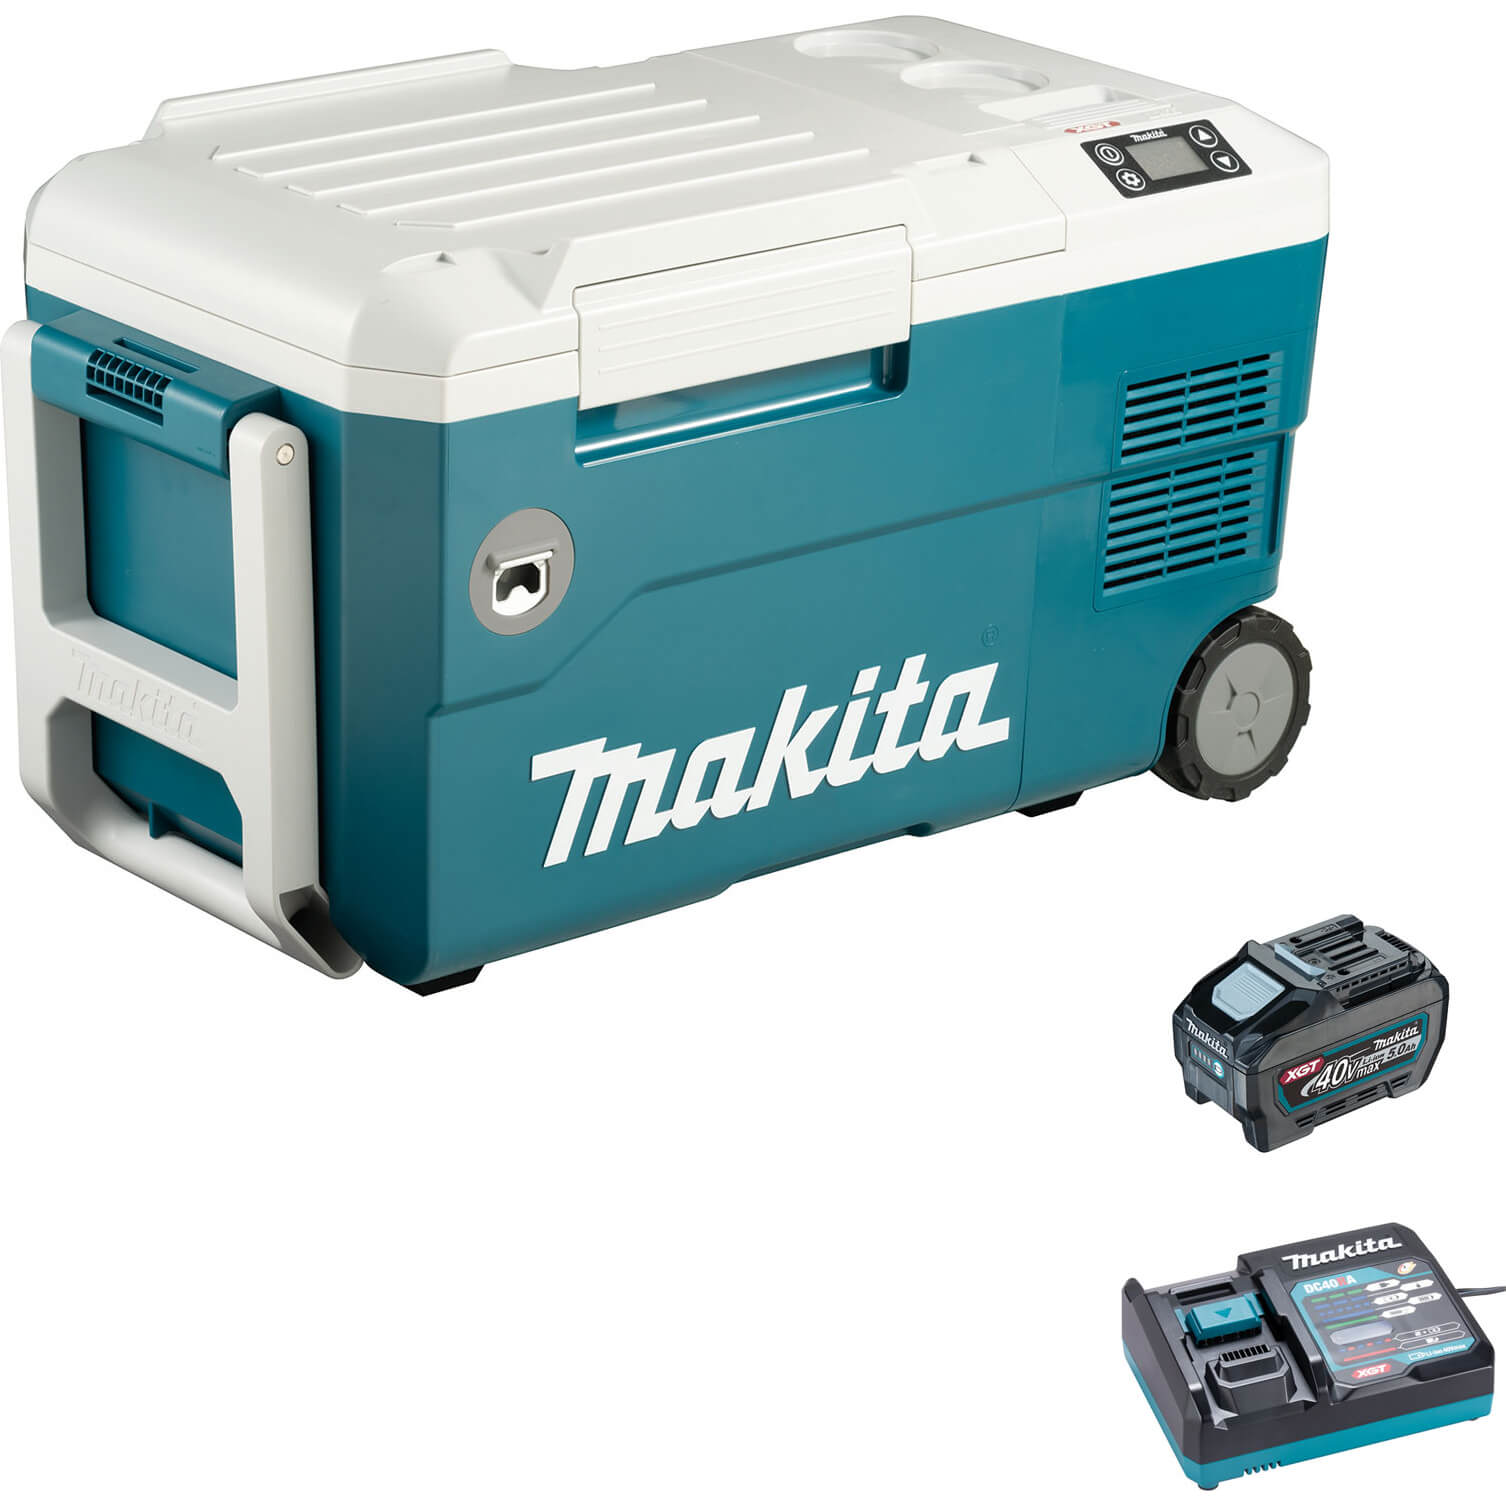 Makita CW001G 40v Max XGT Cordless Drinks Cooler and Warmer Box 1 x 5ah Li-ion Charger